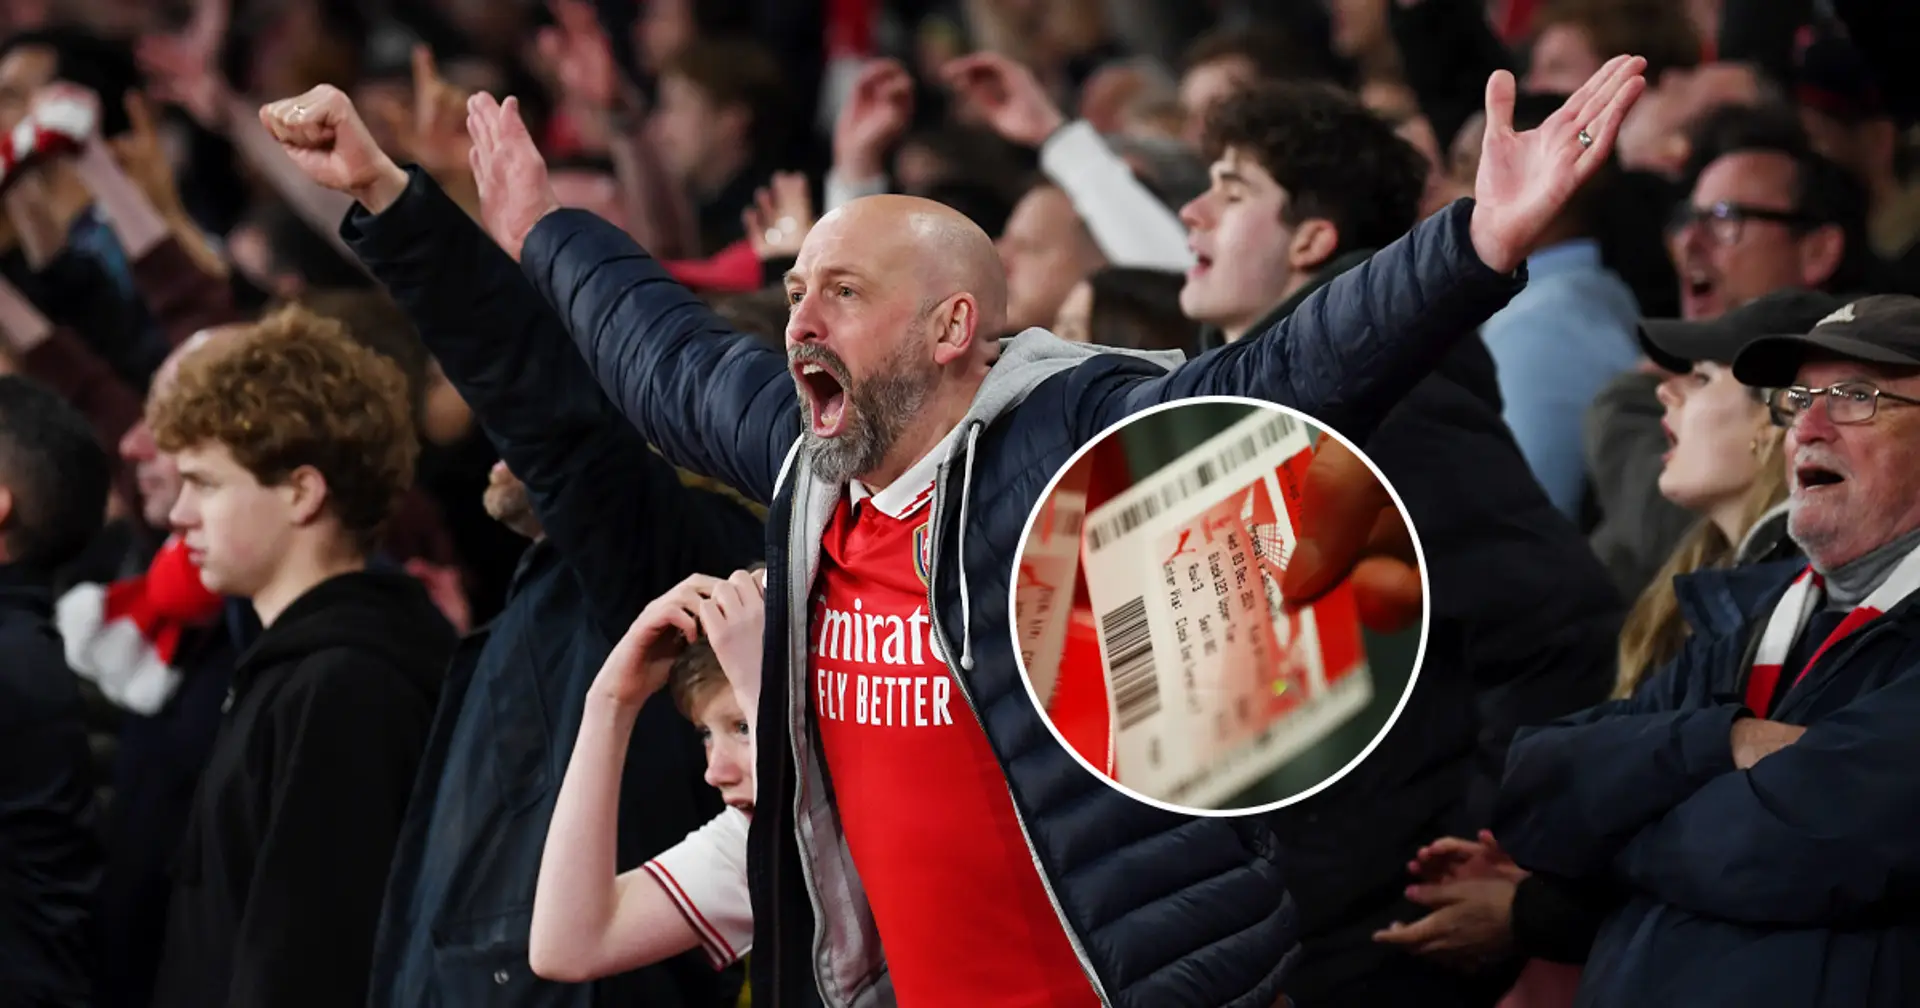 Vor einem Monat wurden Tickets für das letzte Saisonspiel von Arsenal in der Premier League für 330.000 Dollar verkauft - jetzt ist daraus ein Meme geworden